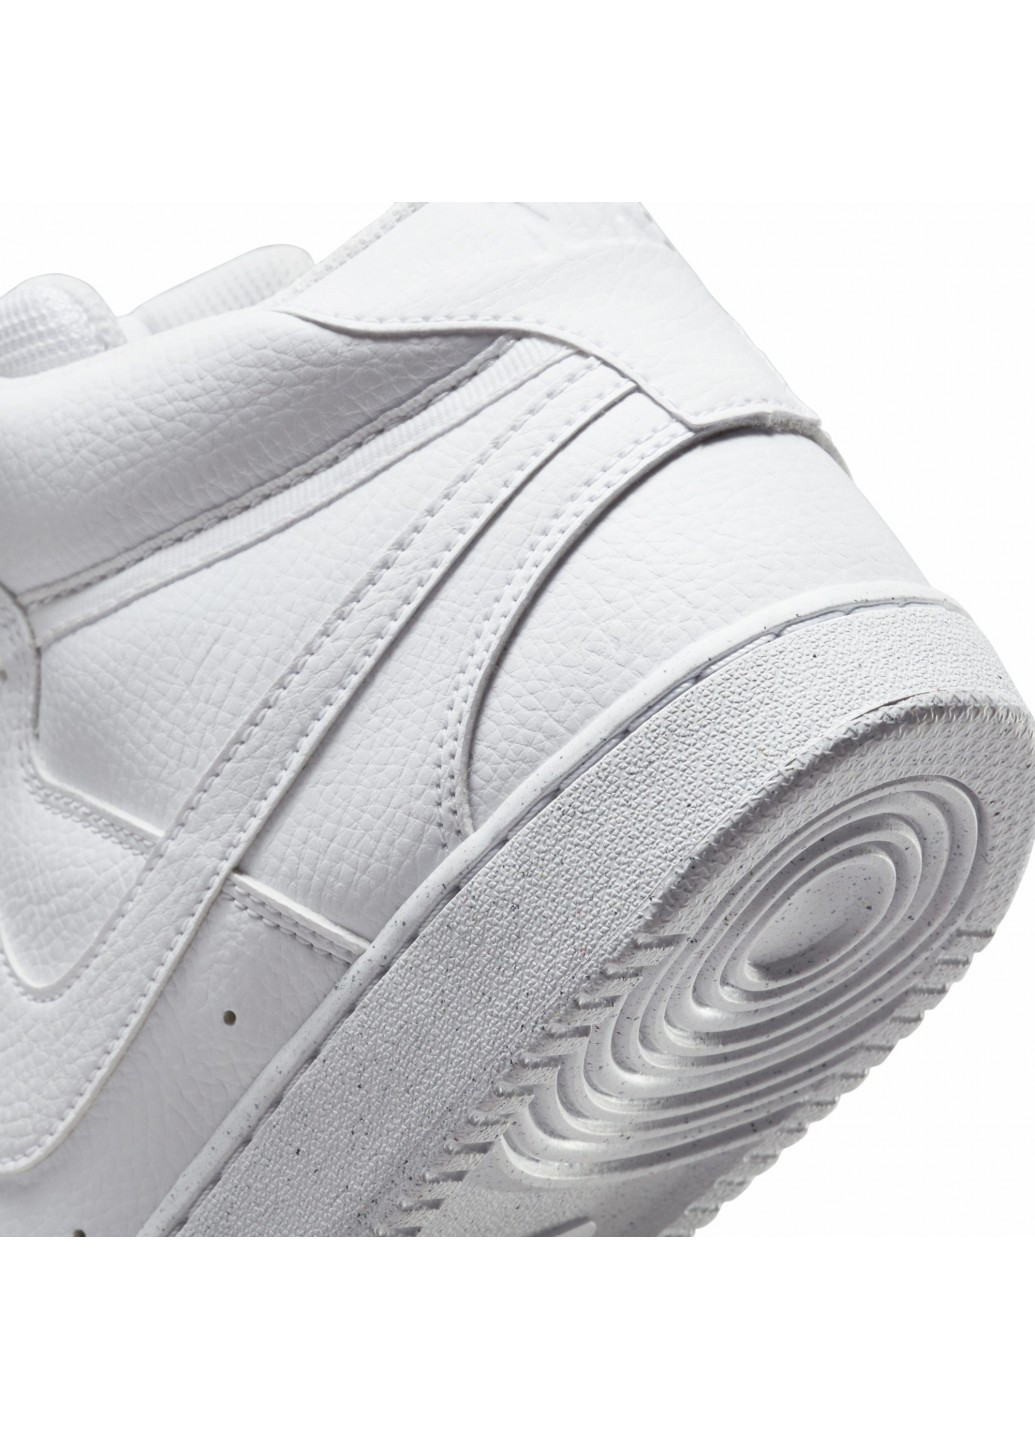 Белые демисезонные кроссовки Nike COURT VISION MID NN